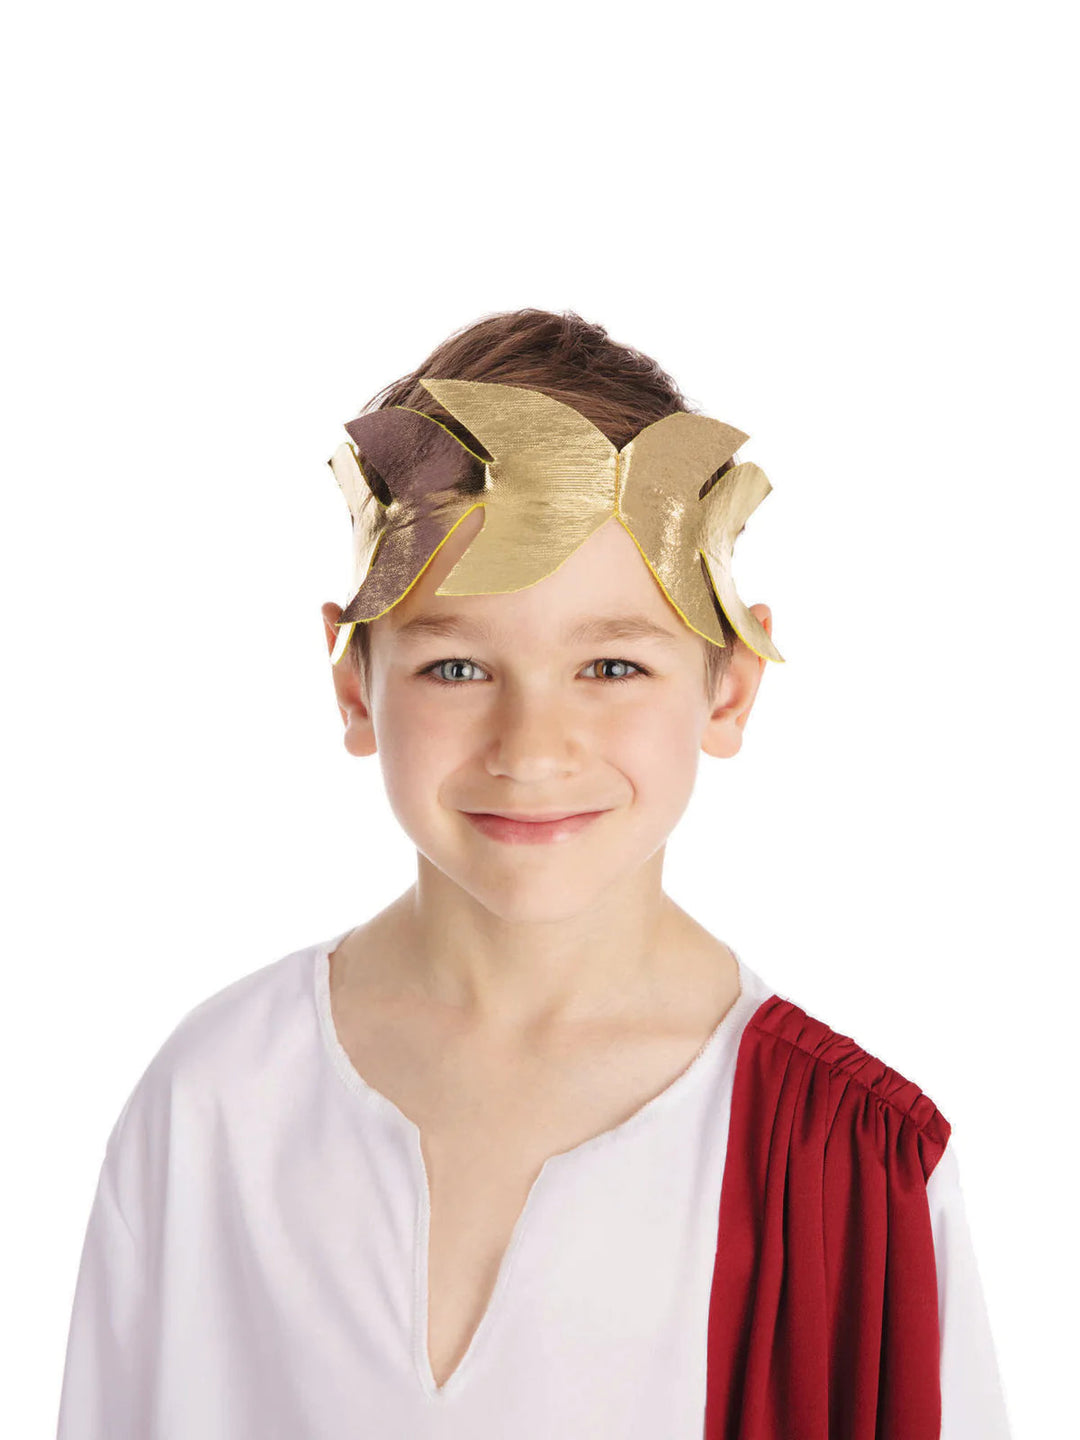 Roman Emperor Childrens Costume White Toga Red Shawl